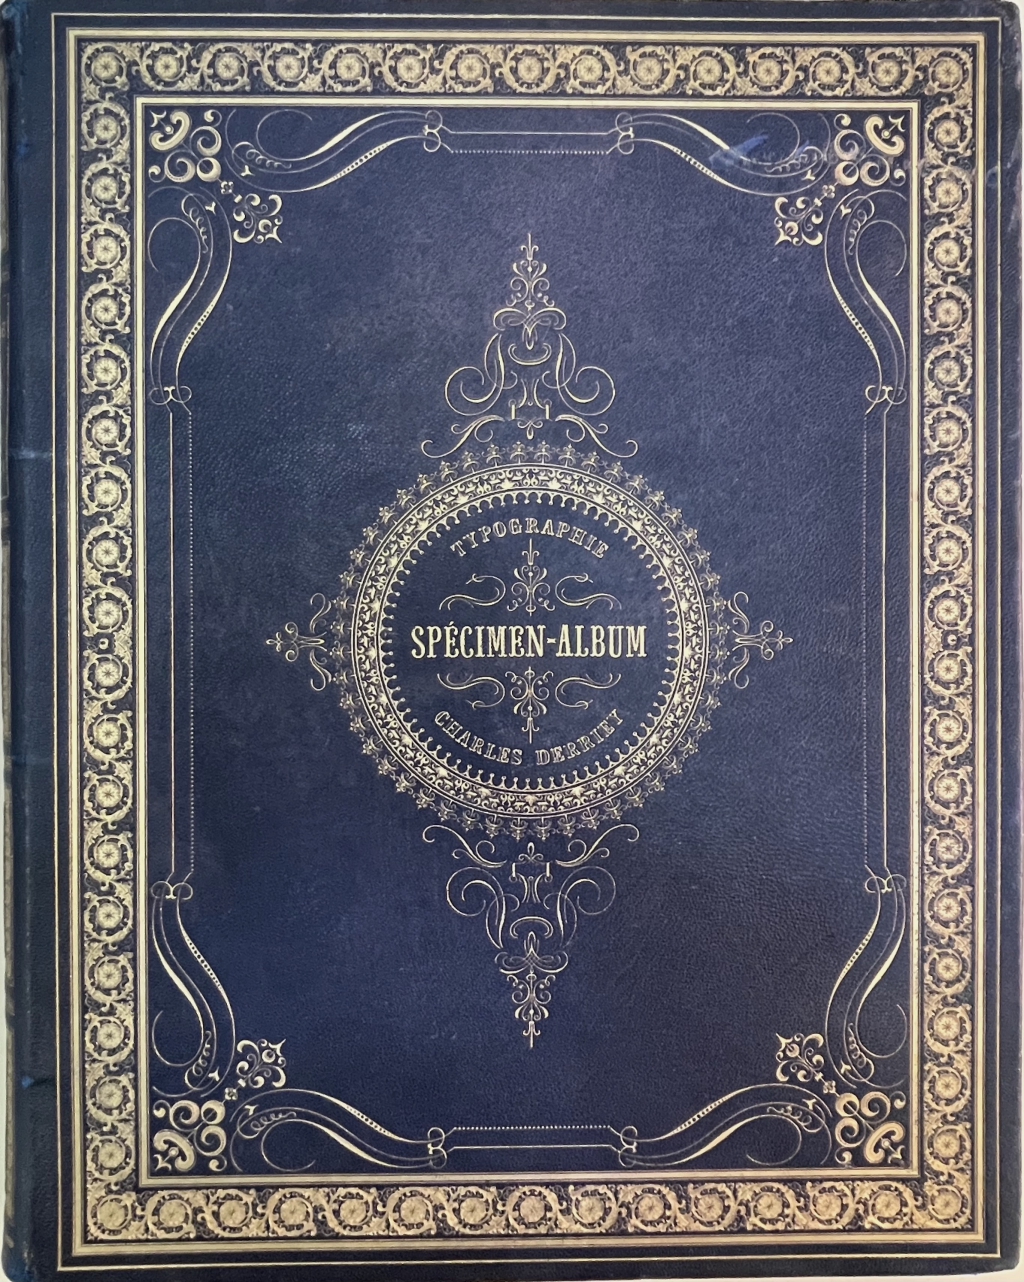 Derriey, Speciment-Album upper cover